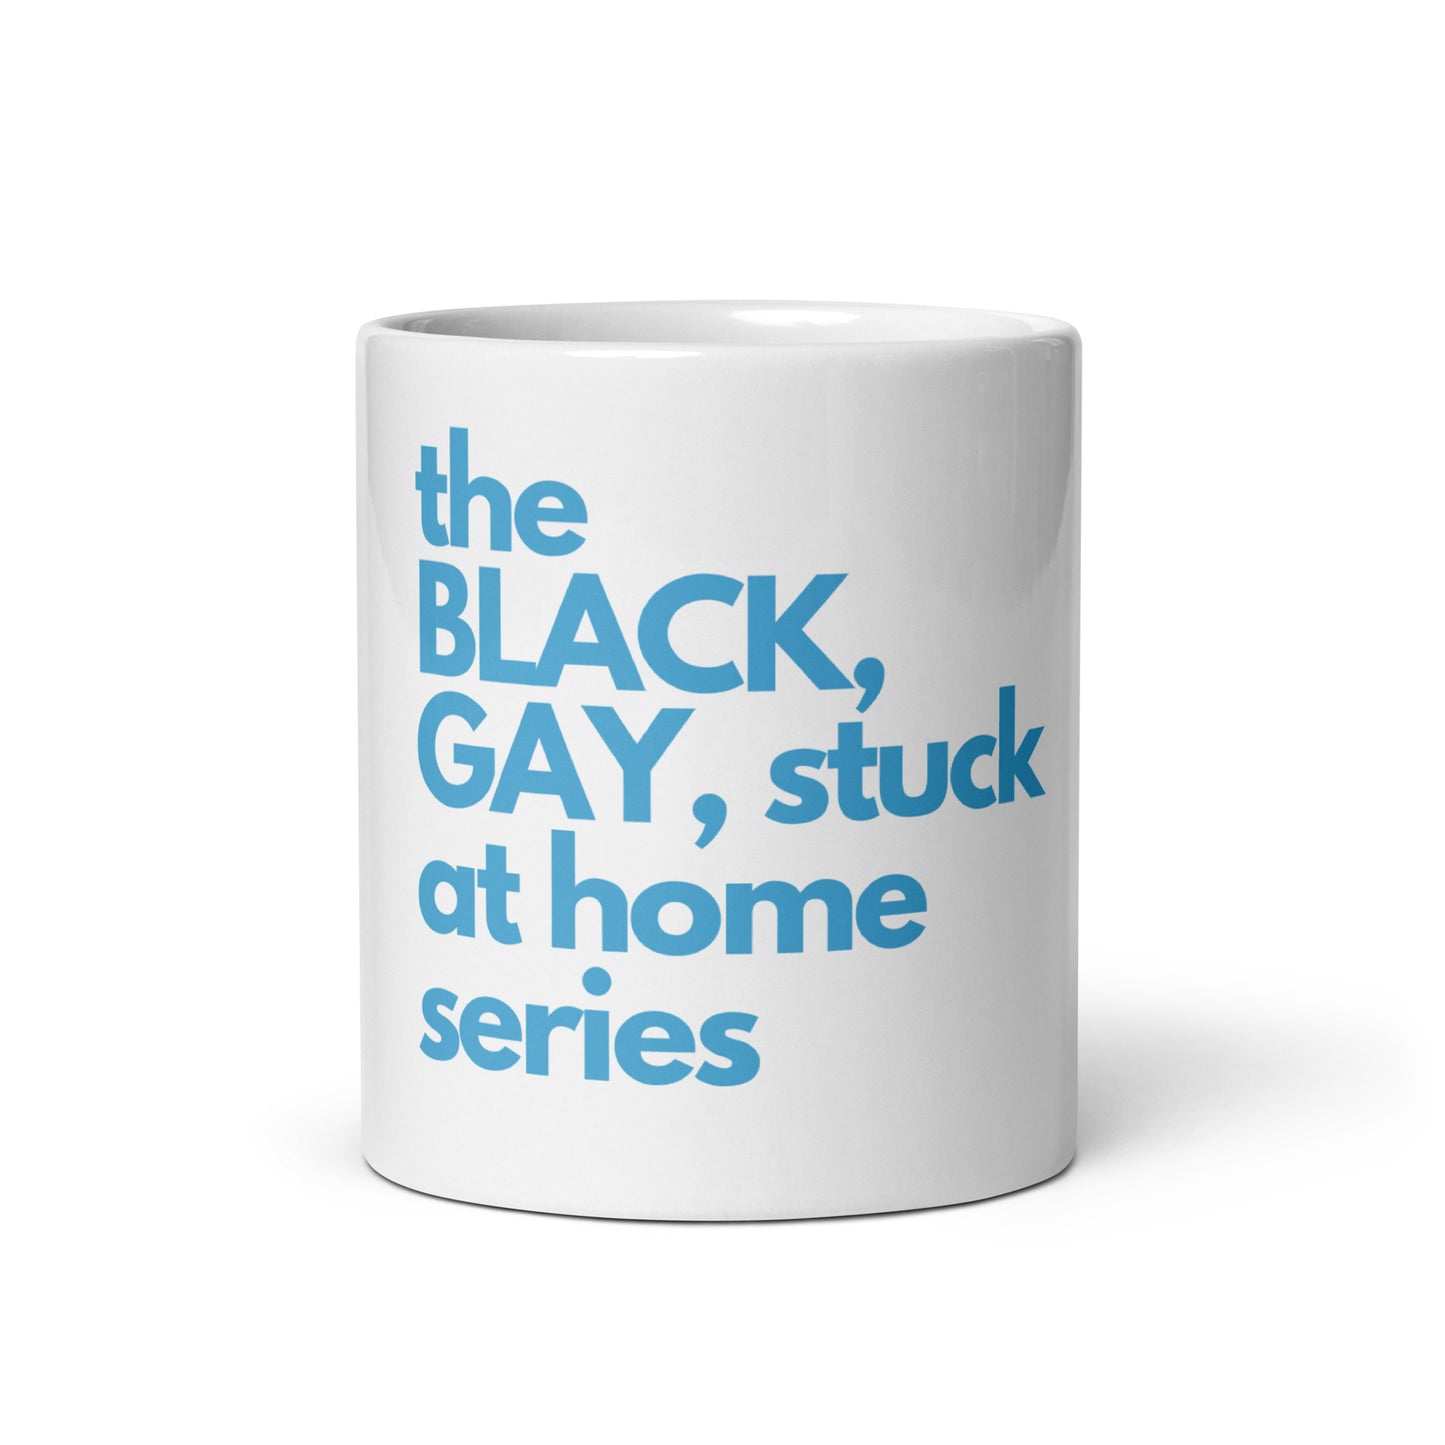 BGSAH Series glossy mug